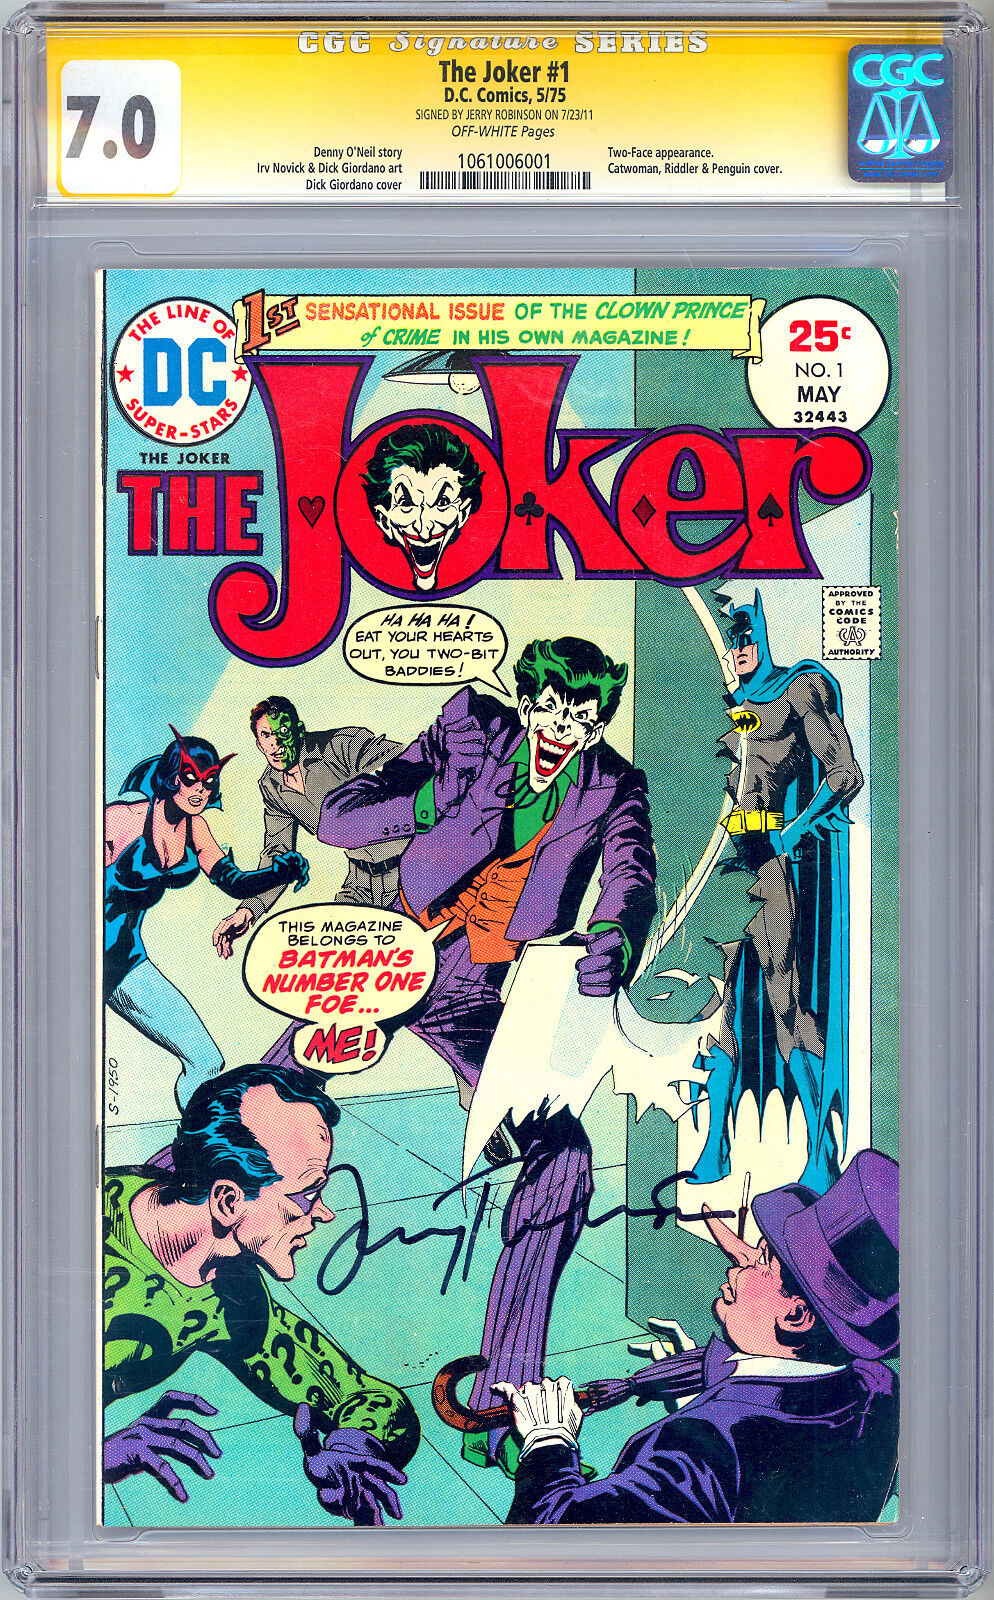 THE JOKER #1 CGC-SS 7.0 SIGNED *BATMAN LEGEND JERRY ROBINSON* JOKER CREATOR 1975